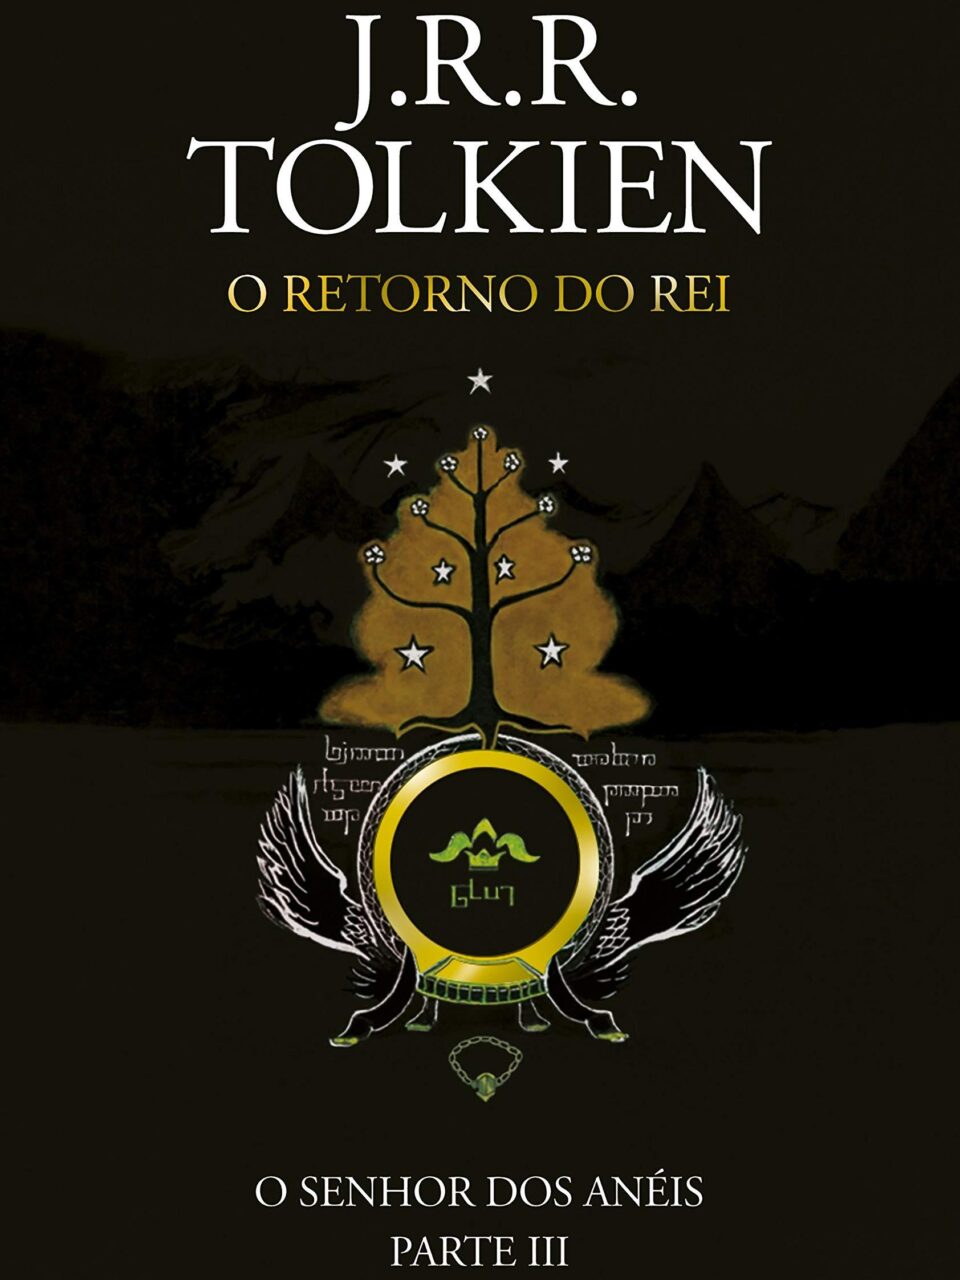 O Senhor dos Anéis – O retorno do rei – J. R. R. Tolkien